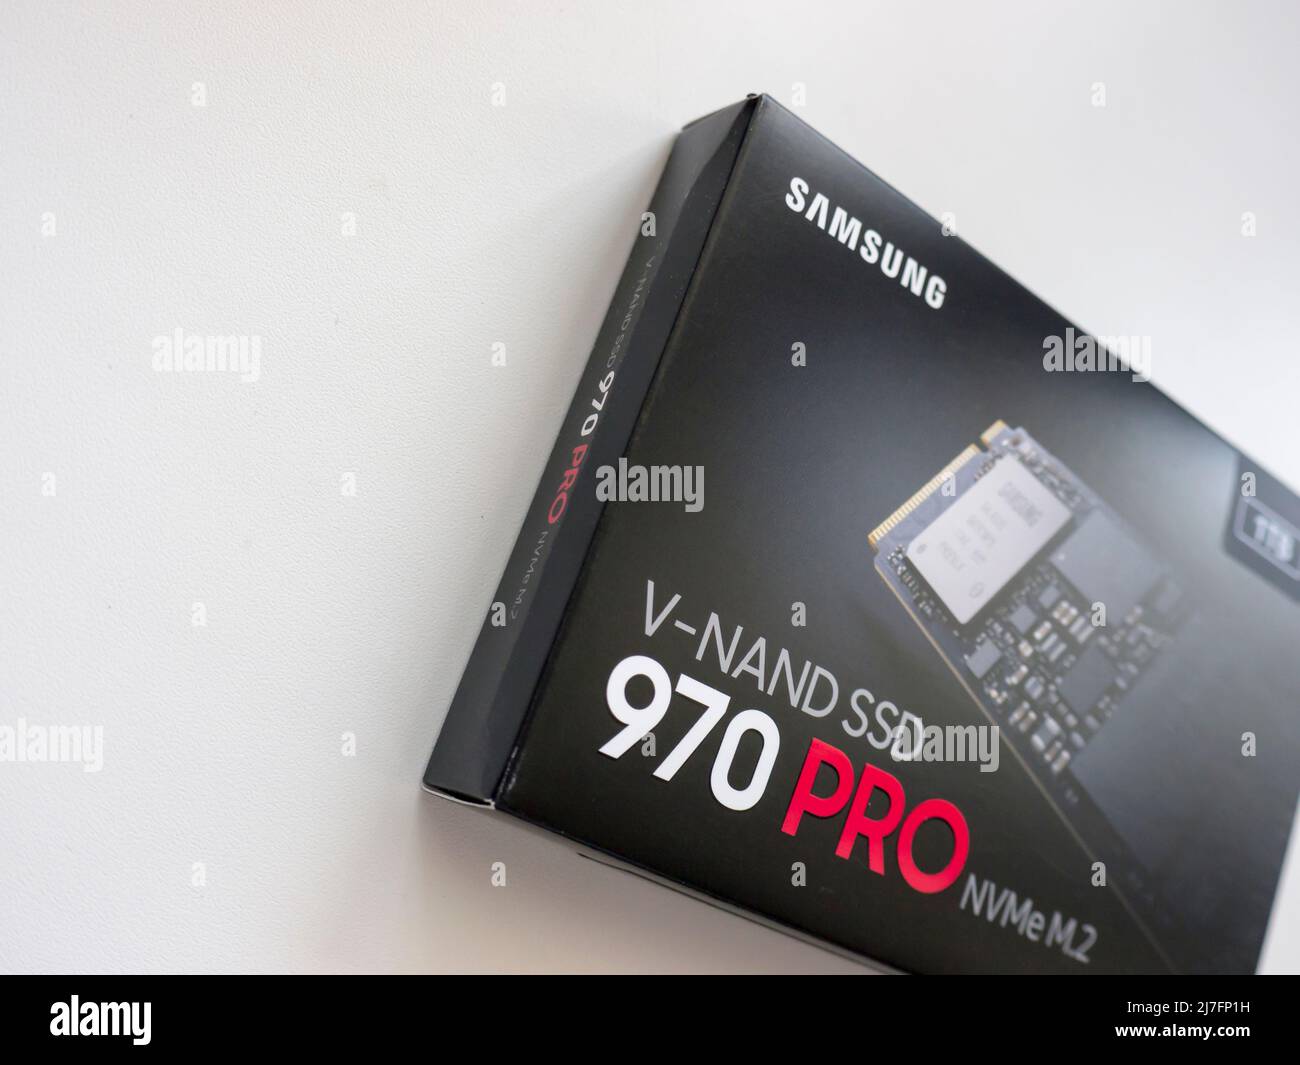 1TB V-NAND SSD Samsung 970 PRO NVMe M.2 (MZ-V7p1T0BW). Stock Photo